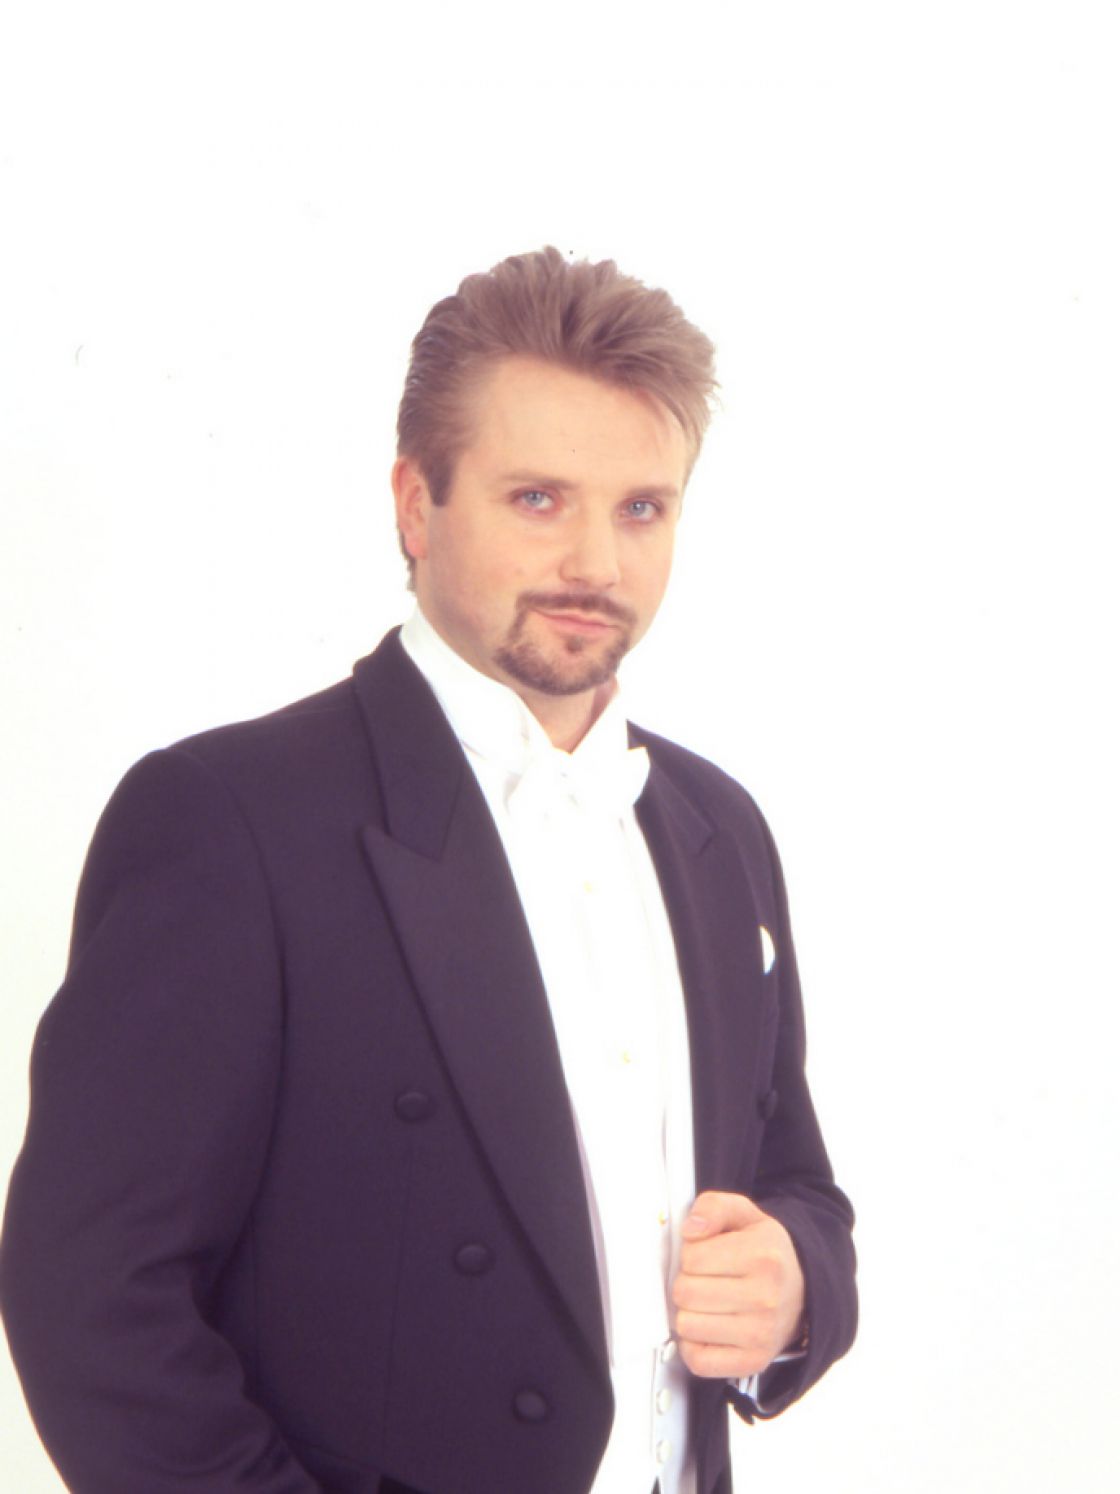 Paweł Skałuba - tenor